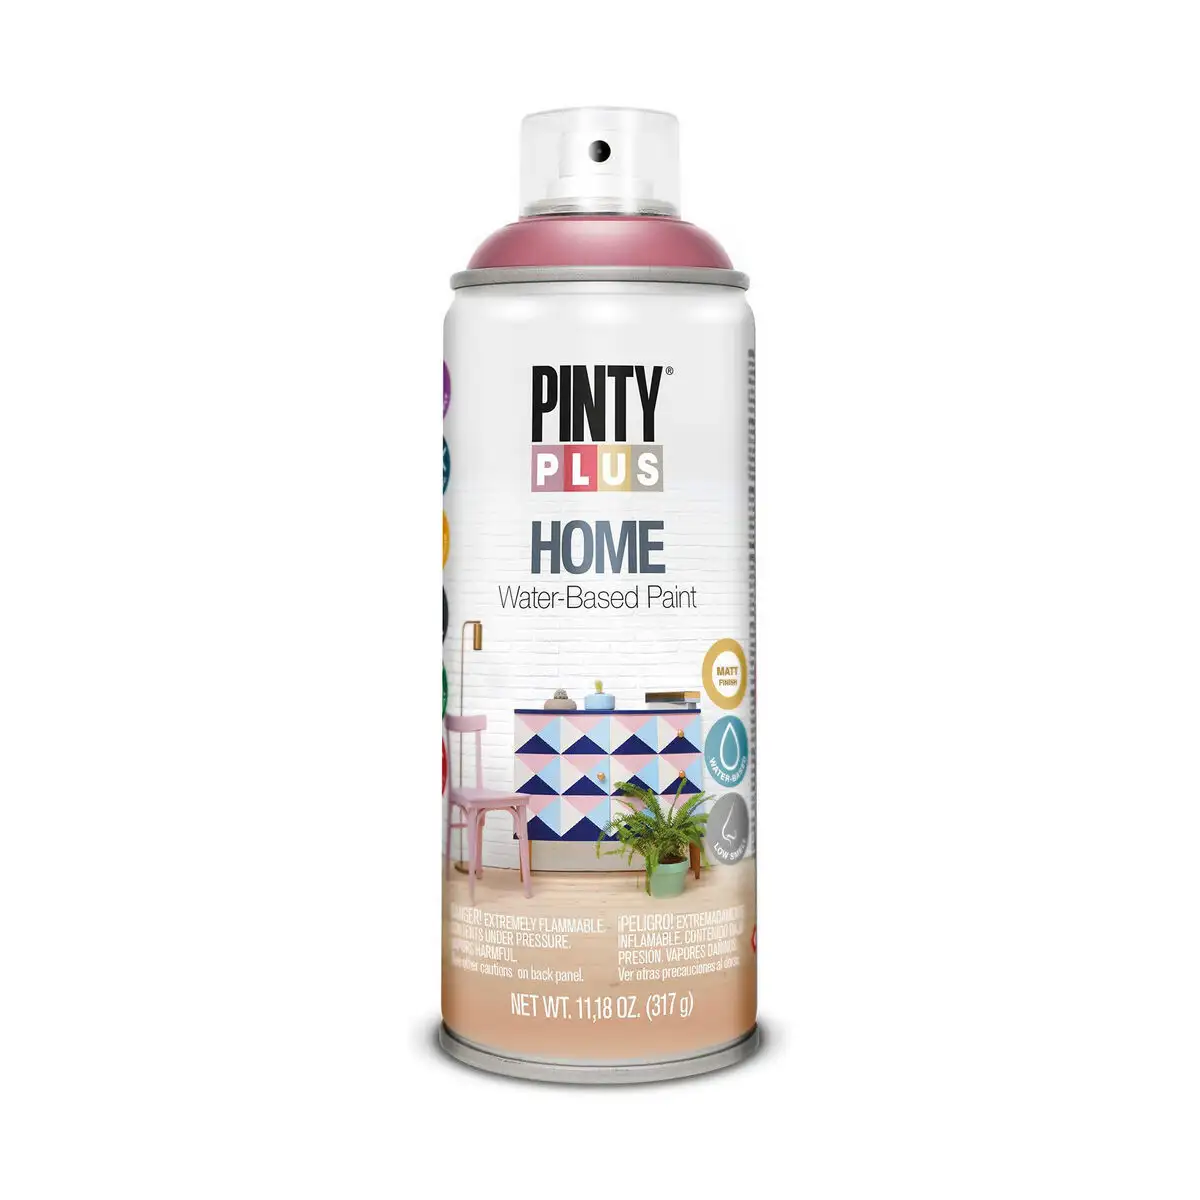 Peinture en spray pintyplus home hm119 400 ml old wine_9092. DIAYTAR SENEGAL - Votre Boutique en Ligne, Votre Identité. Naviguez à travers notre plateforme et choisissez des articles qui expriment qui vous êtes et ce que vous chérissez.